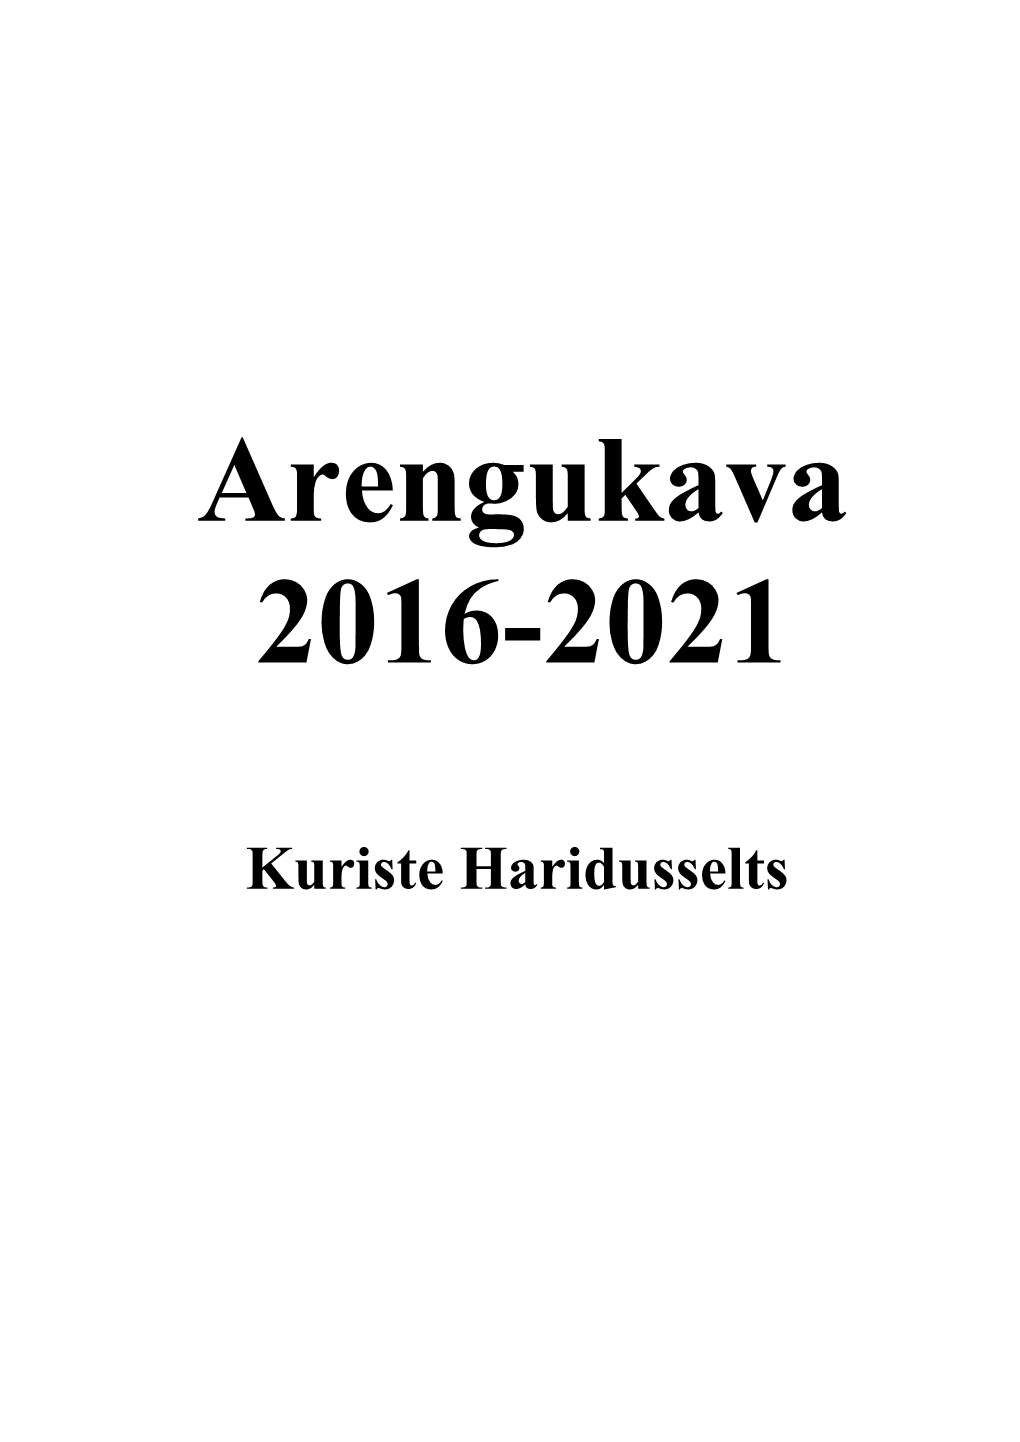 Arengukava 2016-2021.Pdf